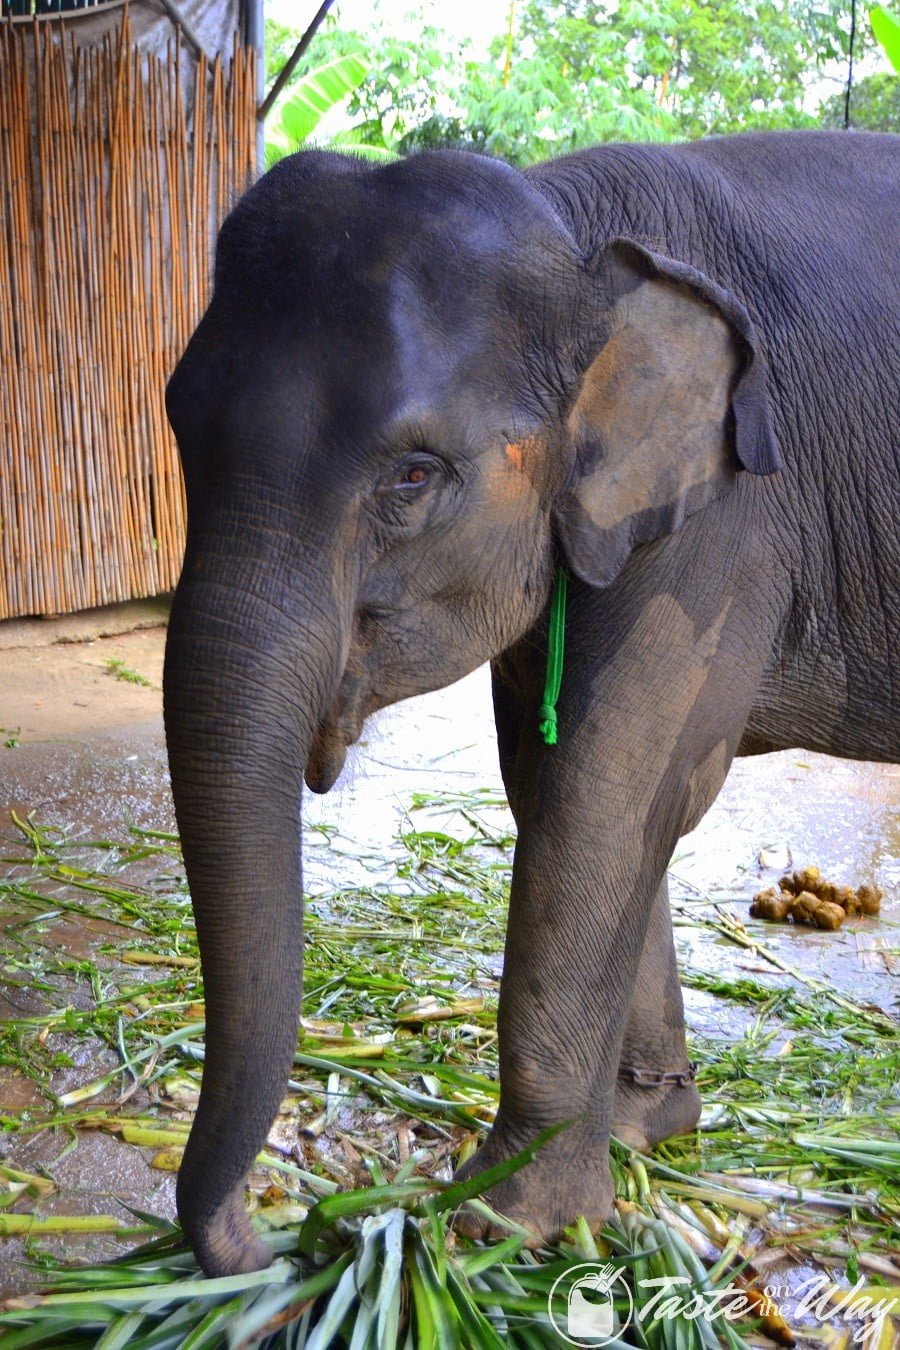 Baby elephant in Phuket #Thailand #travel